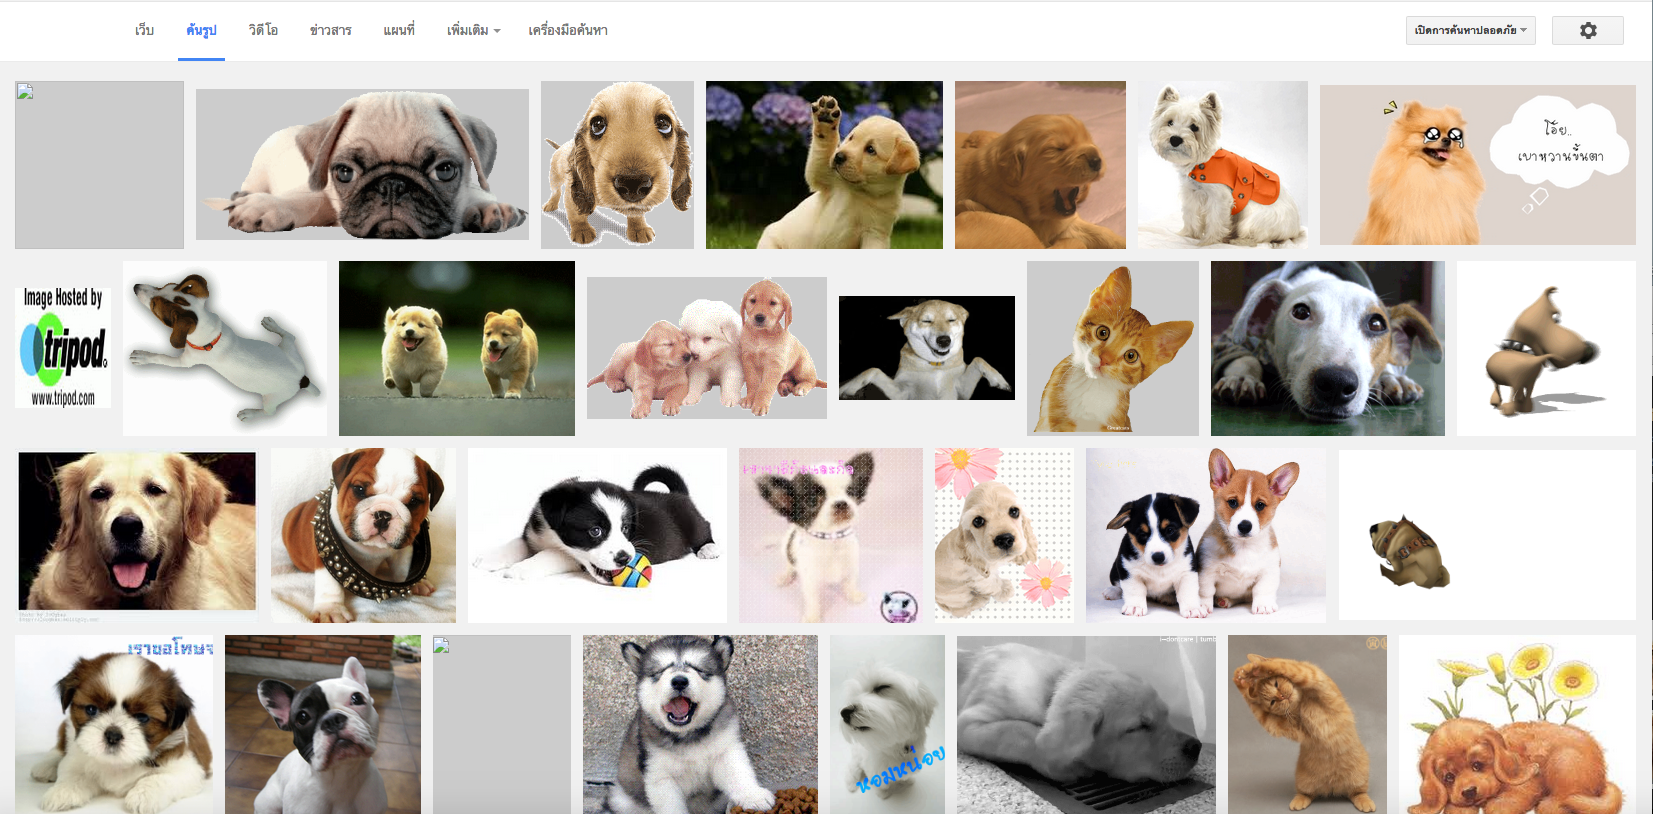 แค่มี “Google GIFs plugin” ตัวช่วยค้นหาไฟล์ GIFs รูปทุกรูปก็ขยับได้อัตโนมัติ!!